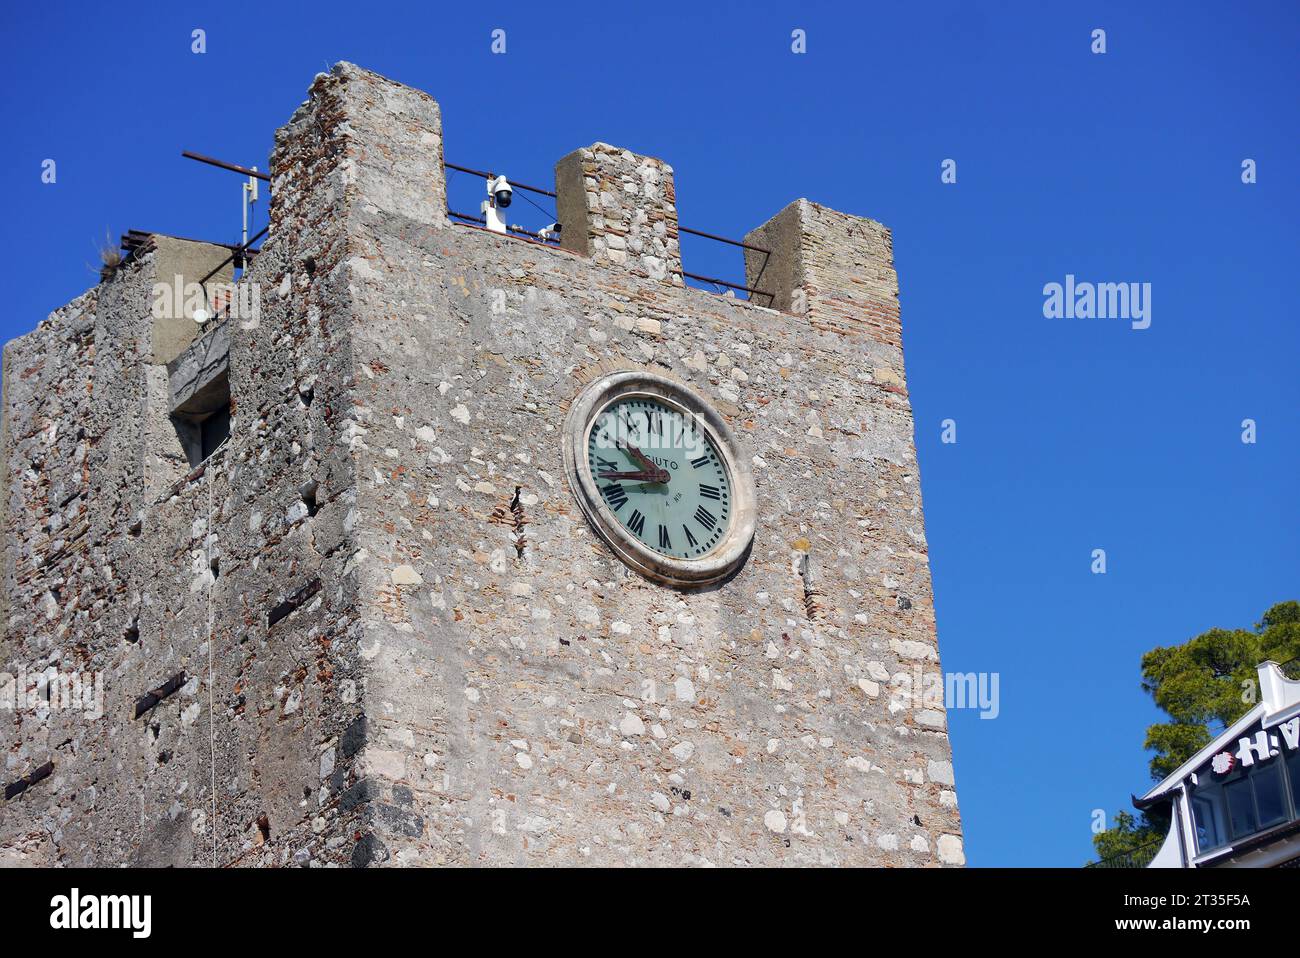 La Torre medievale in pietra dell'Orologio/Campanile nella porta di mezzo la porta d'ingresso al Villaggio di Taormina, Sicilia, Italia, UE. Foto Stock